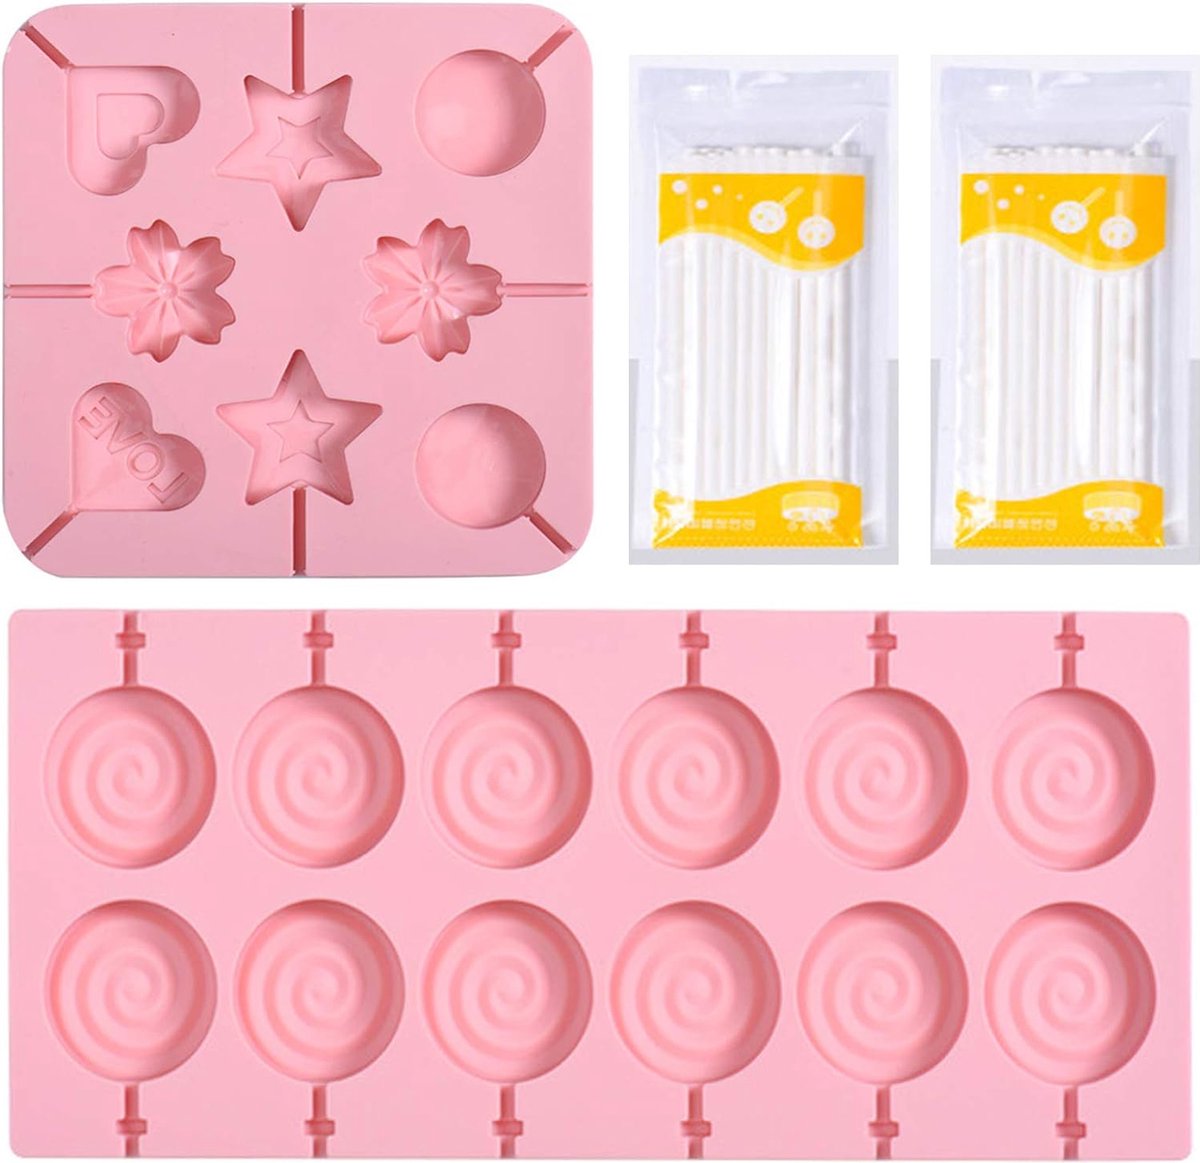 Lollipop Chocolade Siliconenvorm, met 40 lollypop sticks, herbruikbare siliconen vormen, voor het maken van bonbons, koekjes, lolly's (roze)